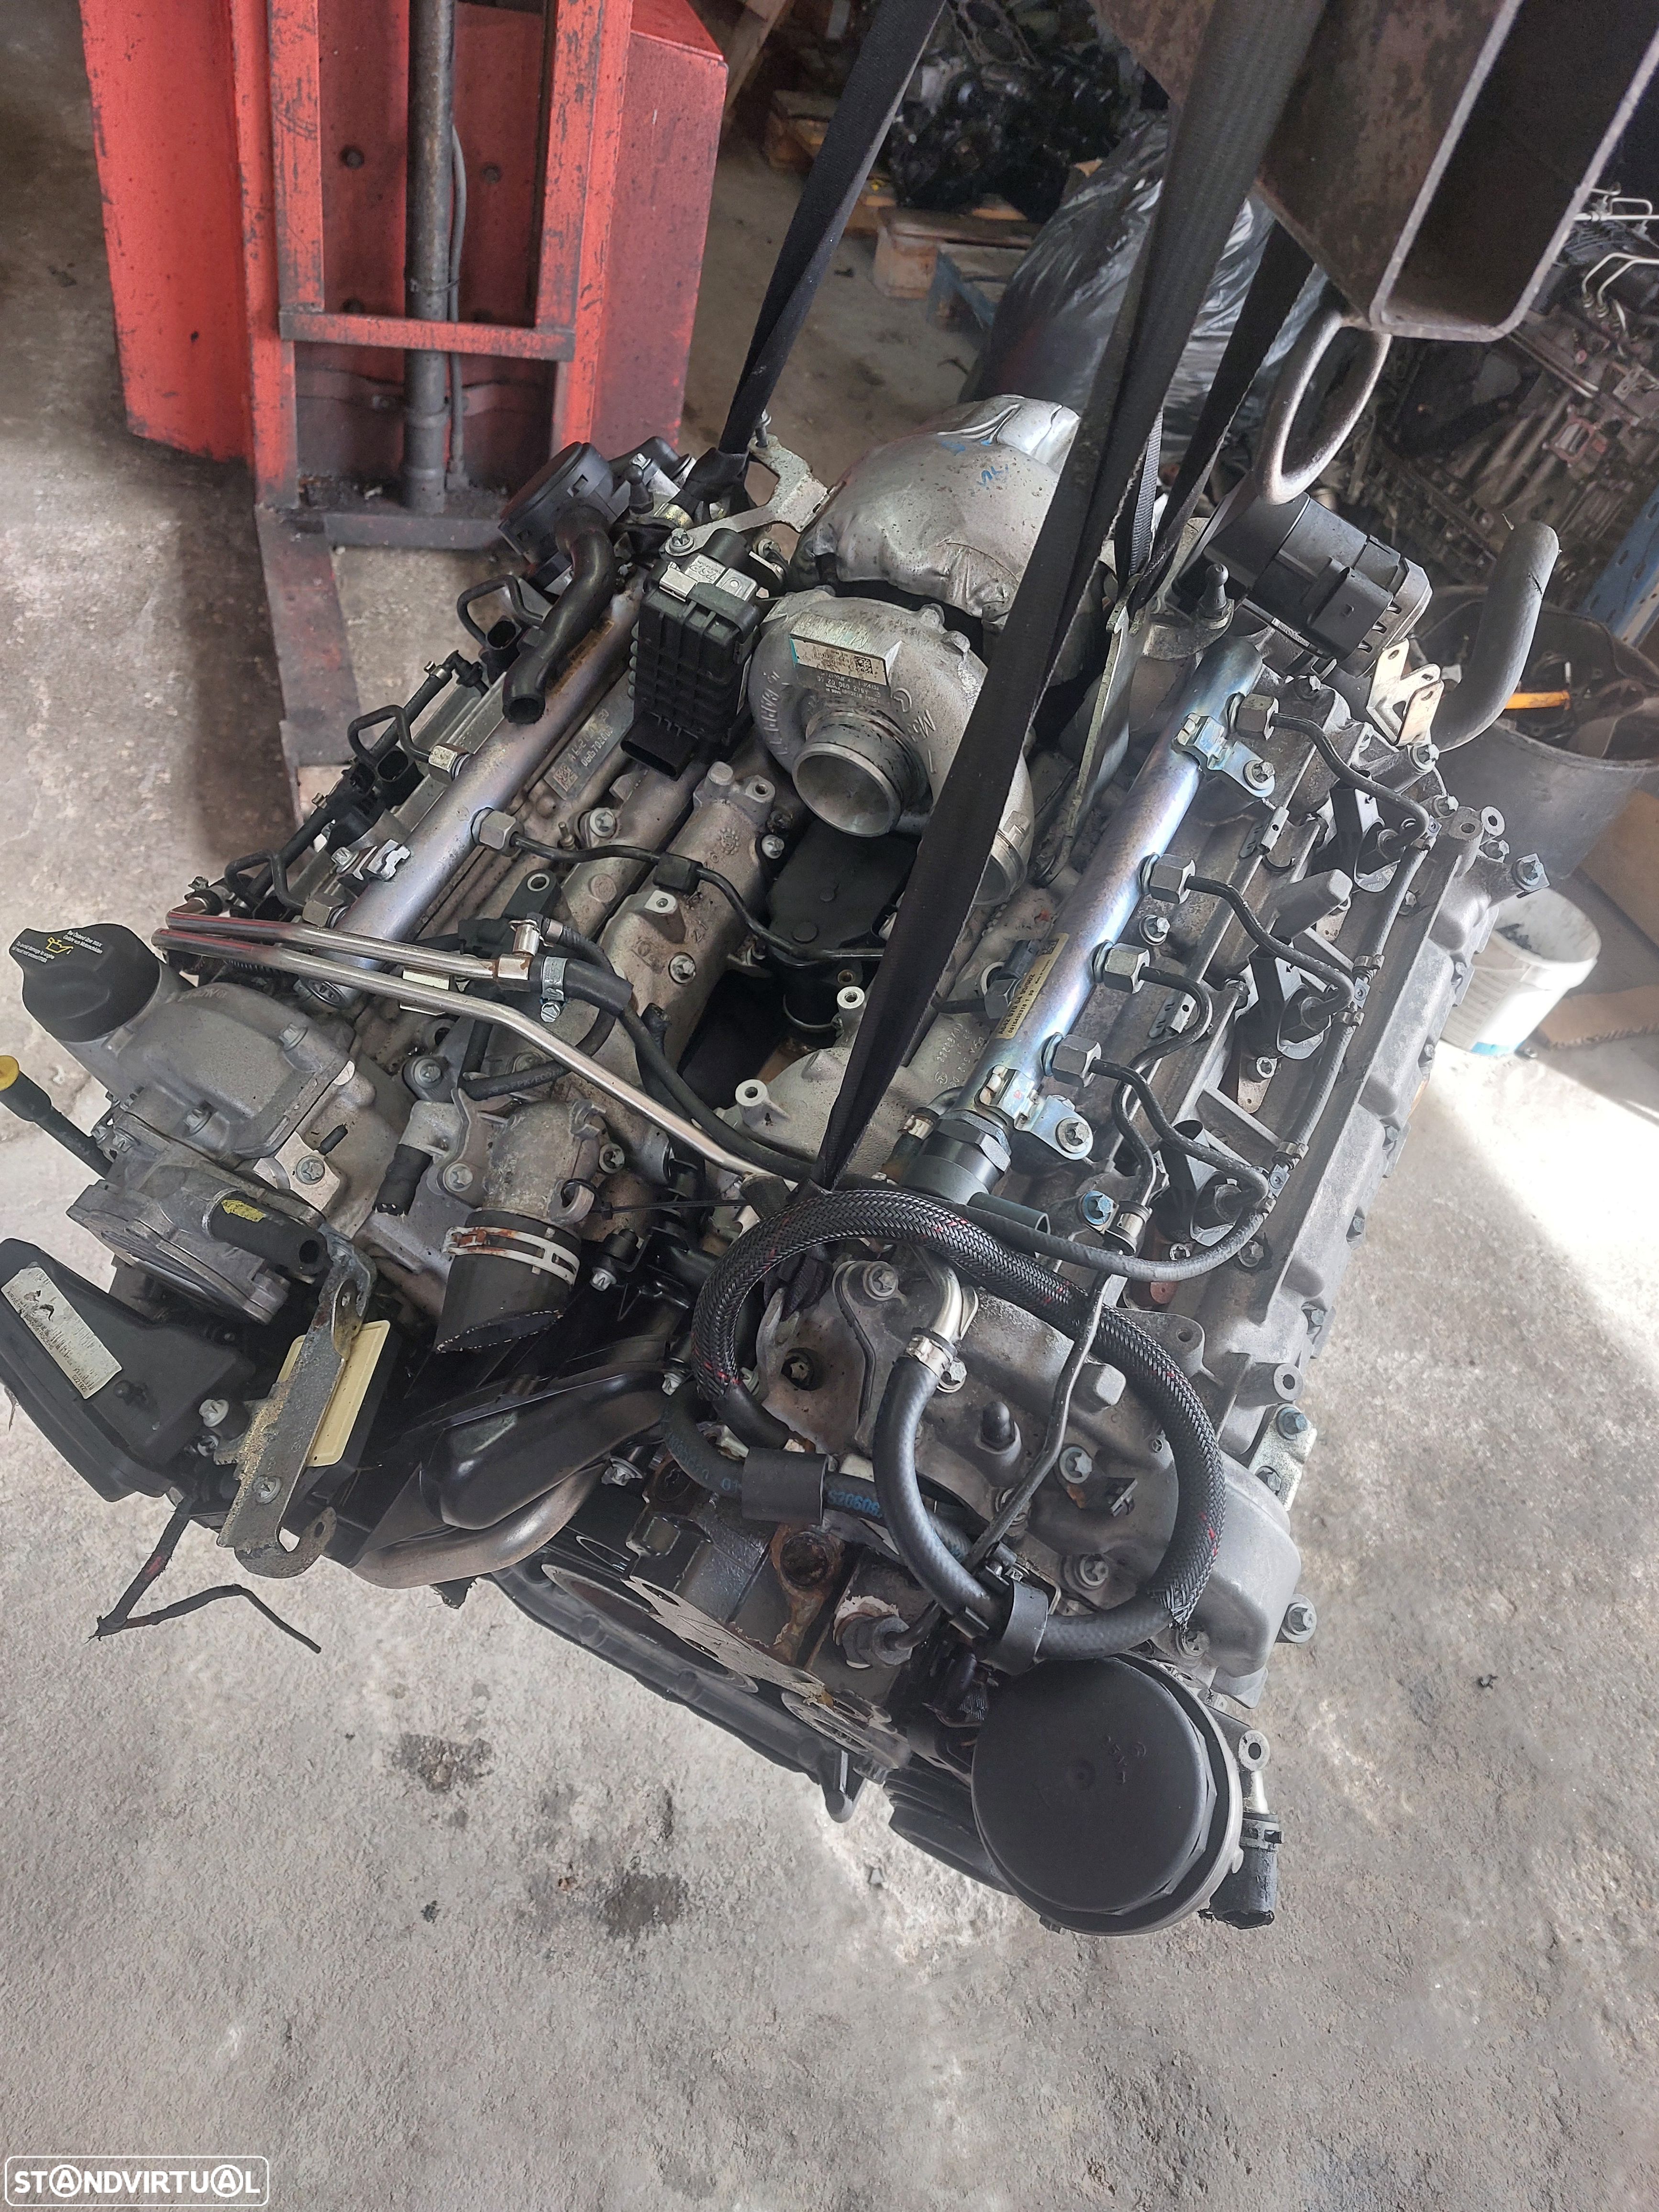 642982 Motor cryseler c 300 3.0 v6 - 1